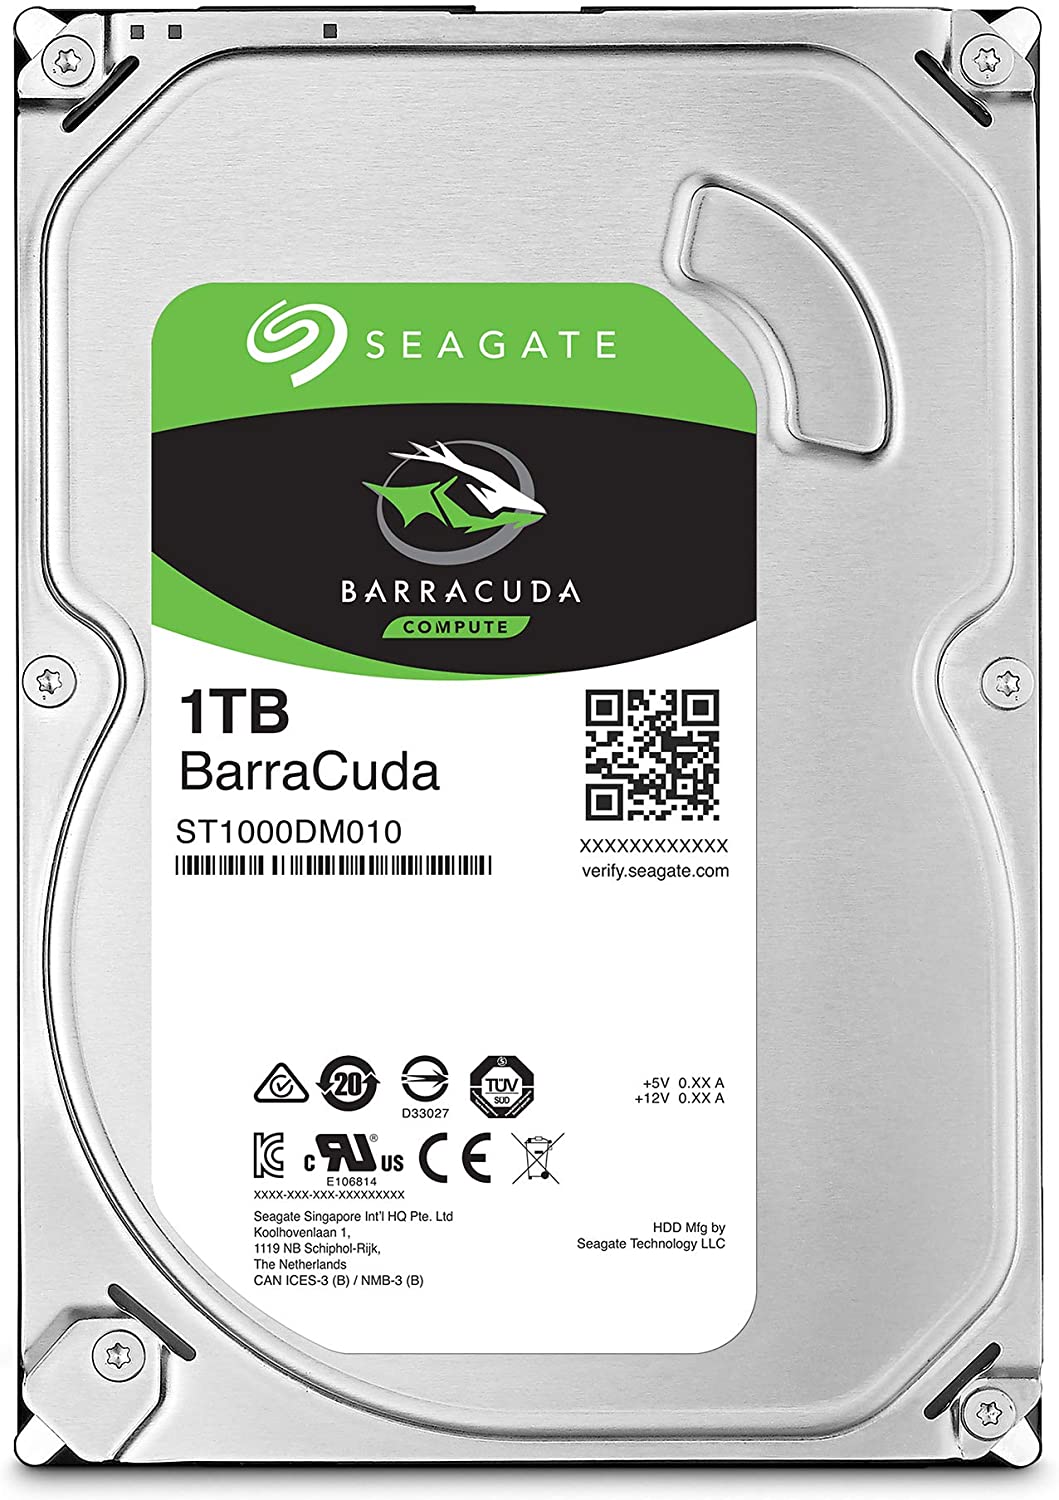 รูปภาพเพิ่มเติมเกี่ยวกับ 1TB HDD (ฮาร์ดดิสก์) SEAGATE BARRACUDA 7200RPM SATA3 (ST1000DM010) - รับประกัน 3 ปี